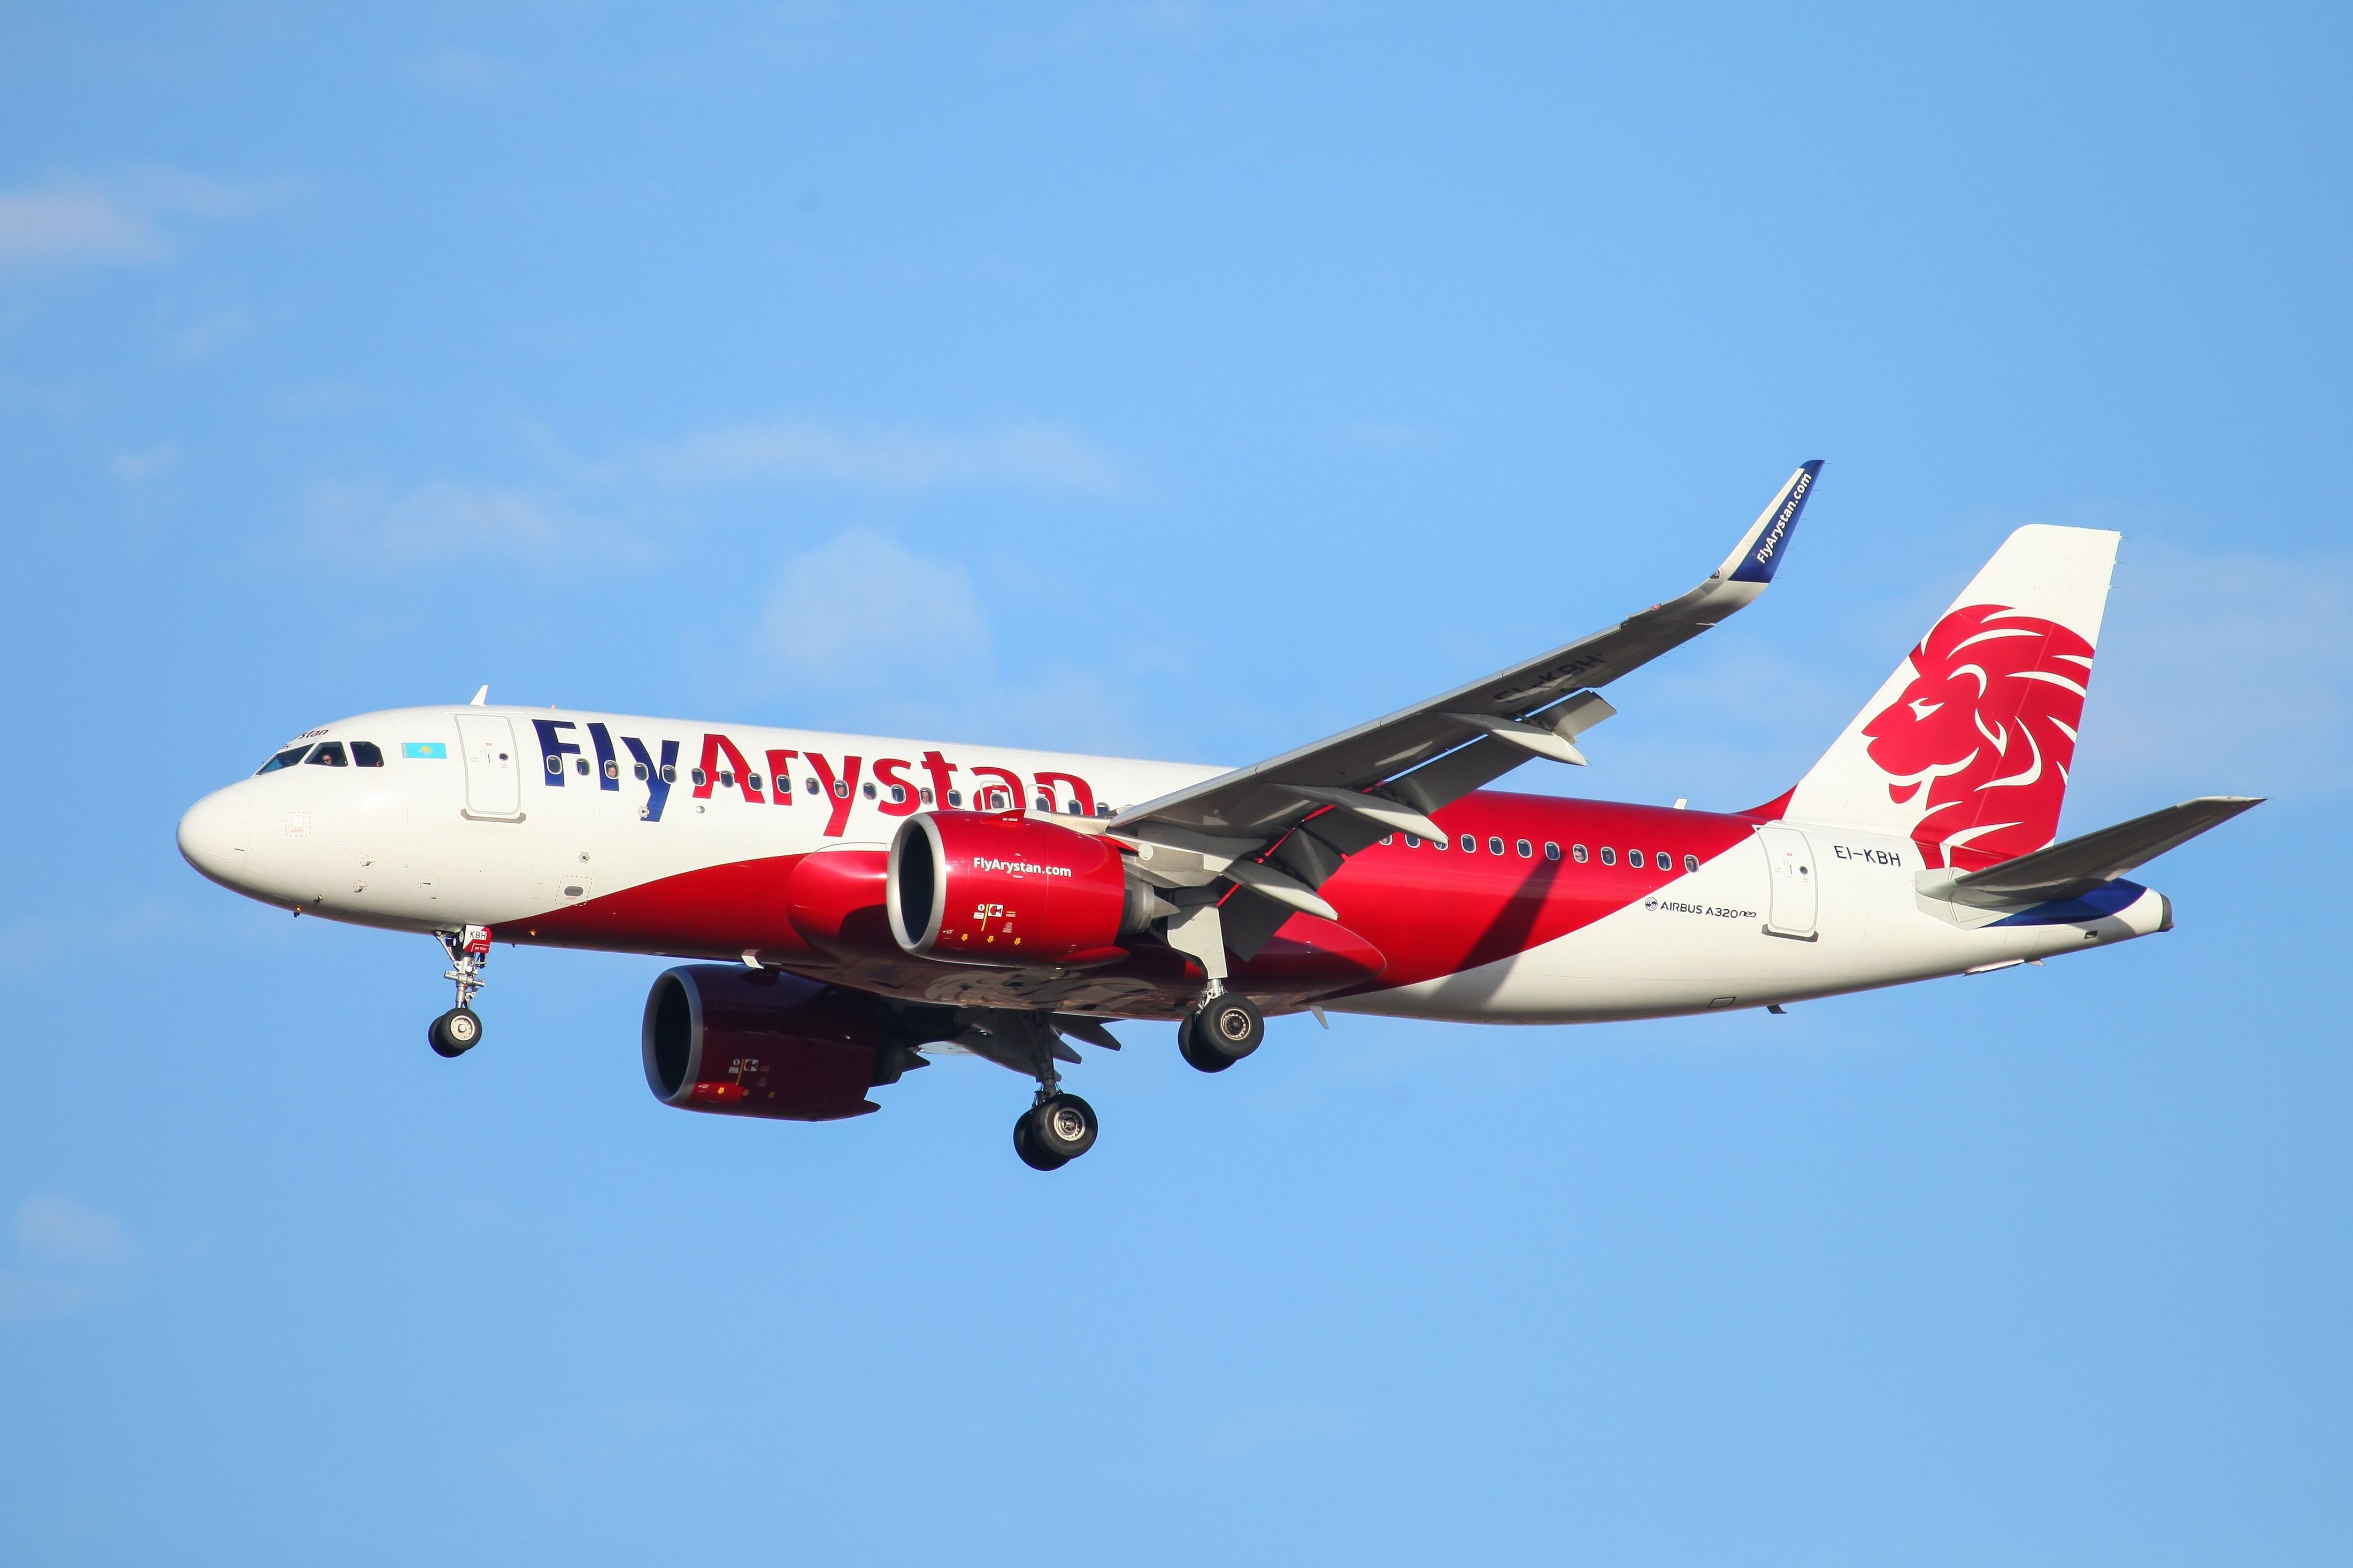 FlyAristan A320 Shutterstock